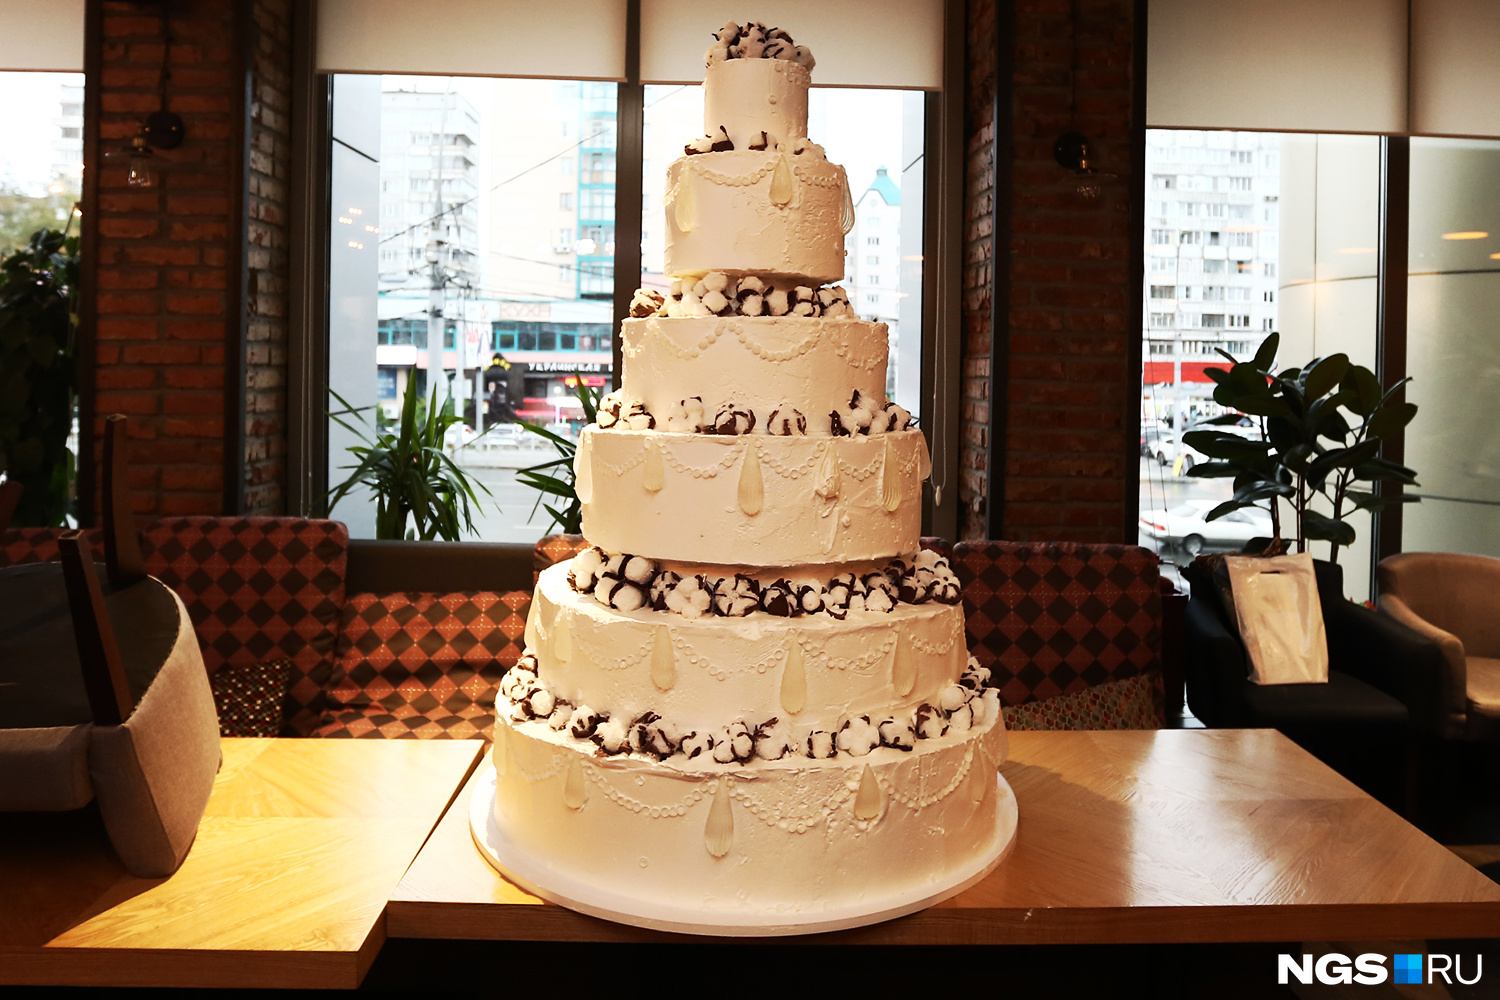 Оригинальные идеи тортов на годовщину свадьбы: 1, 3, 5, 10, 25, 35 лет